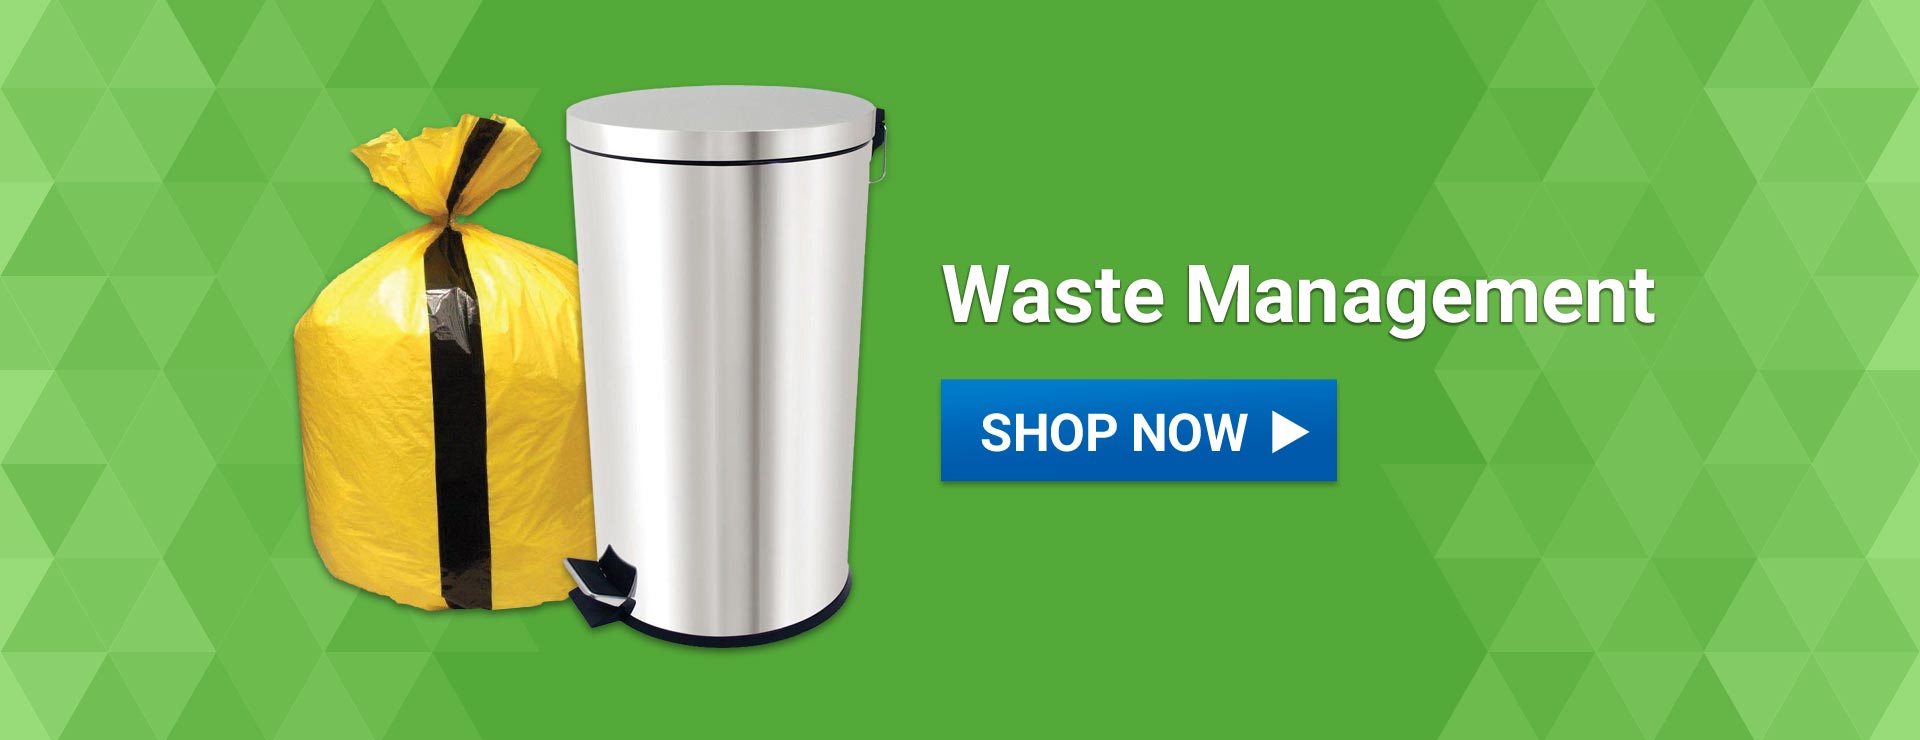 Alliance UK Waste Management